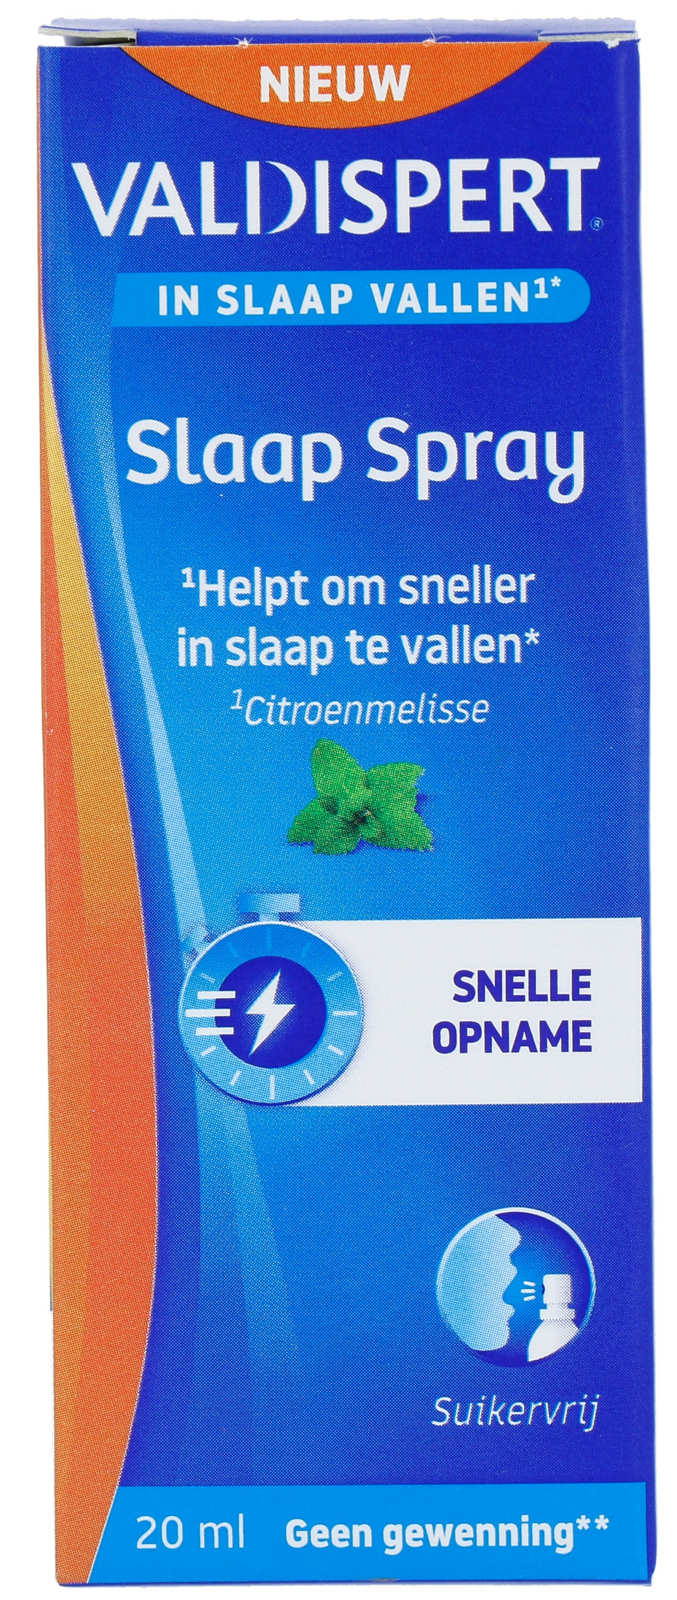 Image of Valdispert Slaap Spray